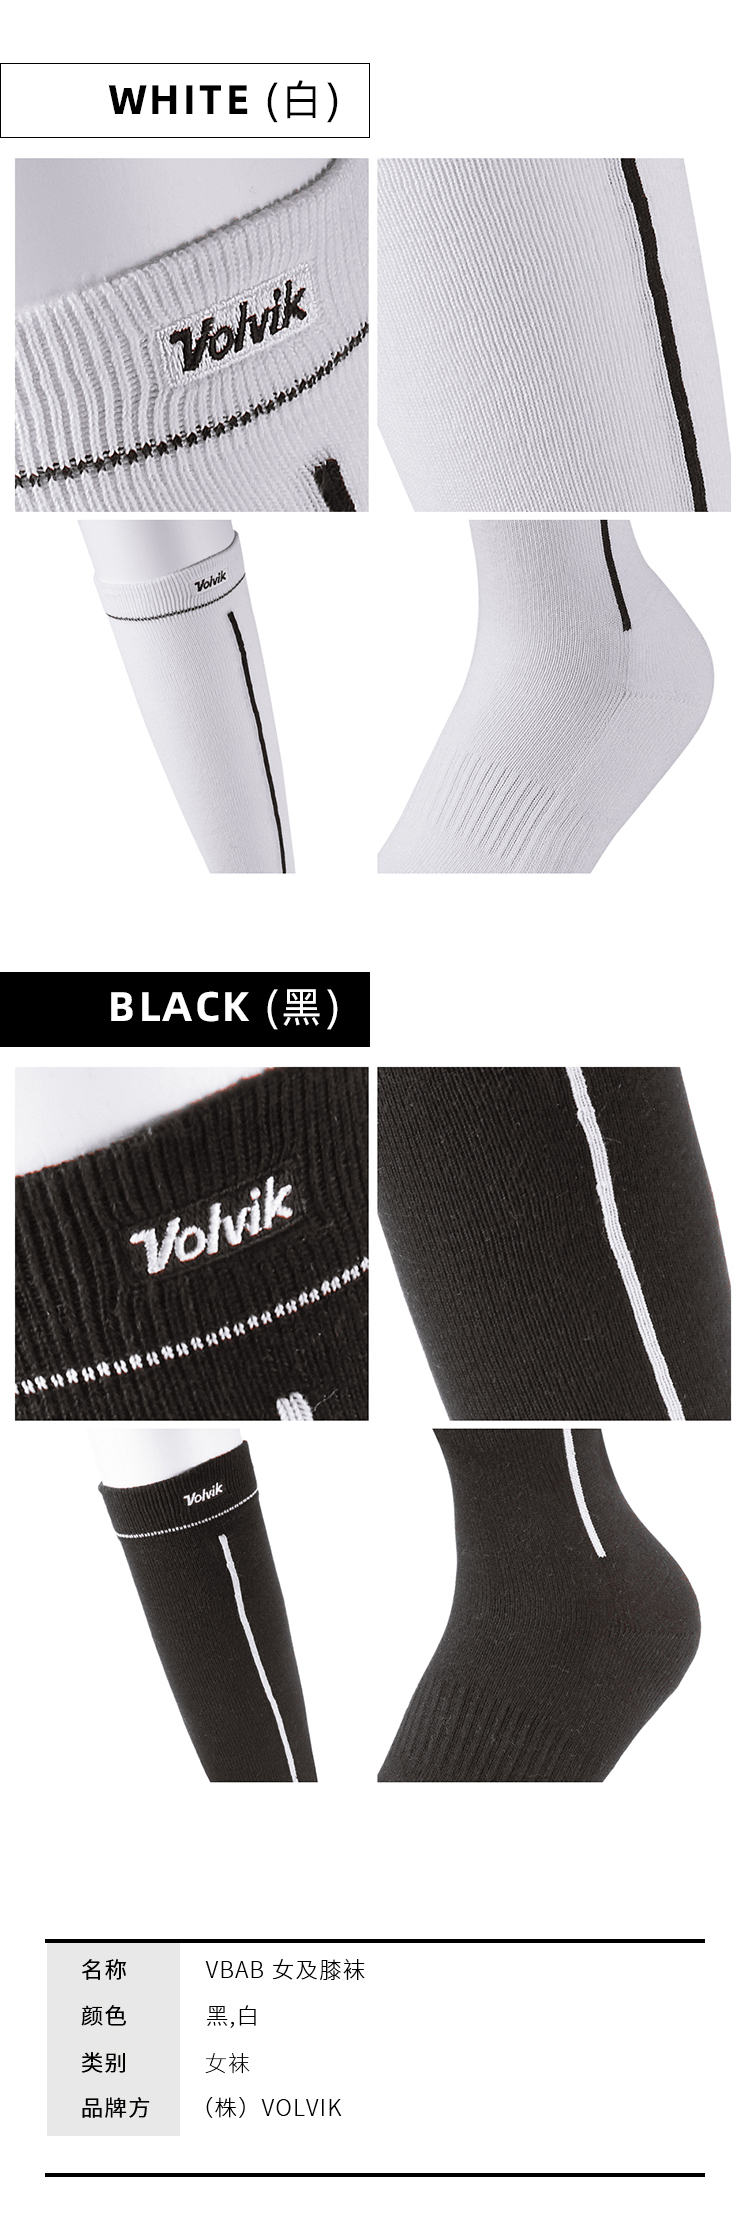 【新款】Volvik沃维克高尔夫女袜及膝袜舒适透气牢固耐穿运动袜